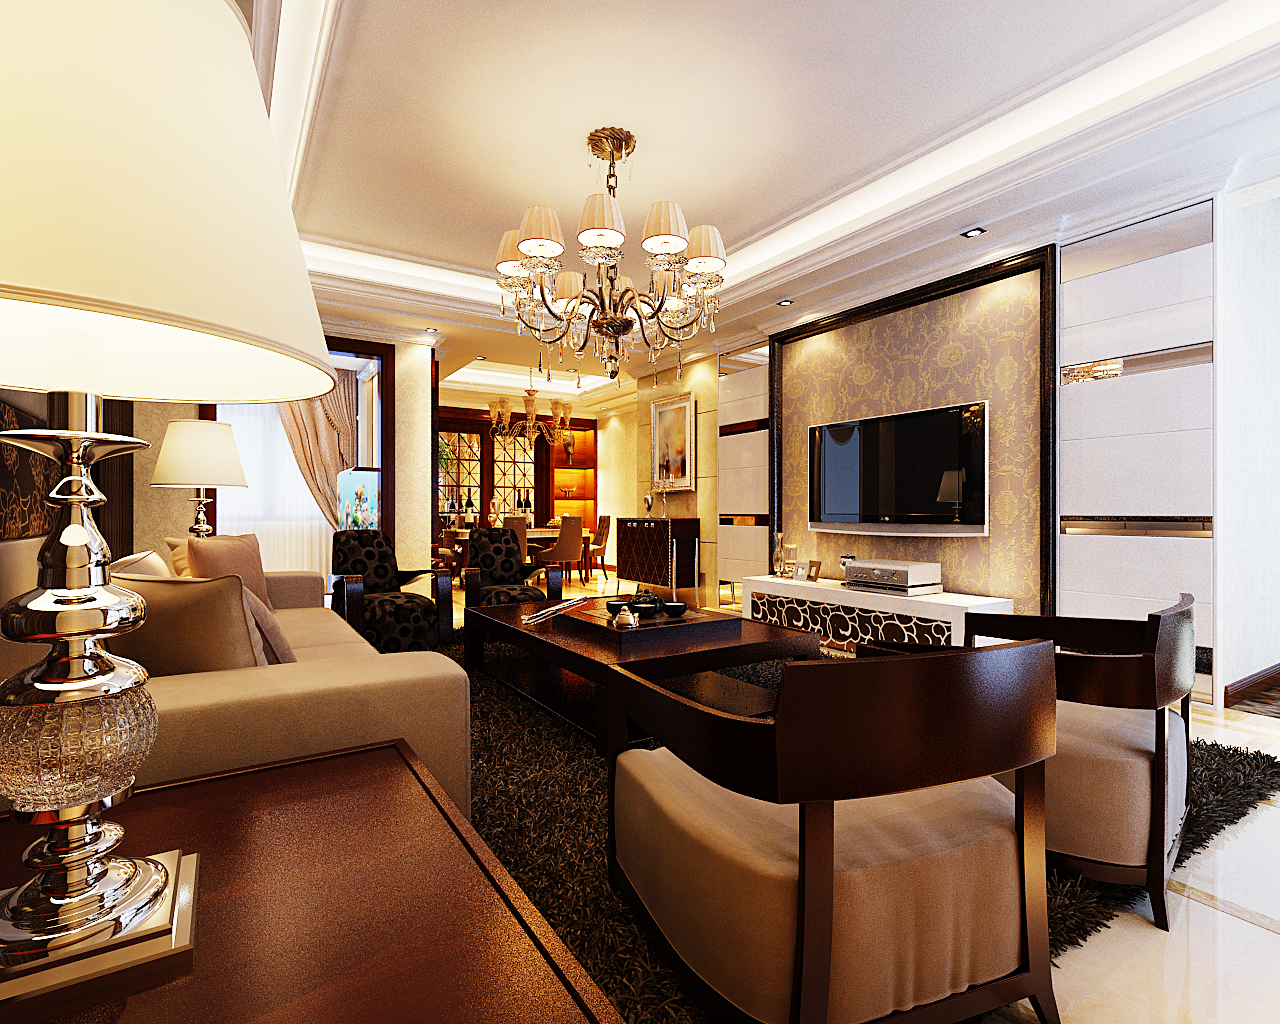 国龙绿城怡园三室两厅150平欧式简约风格装修